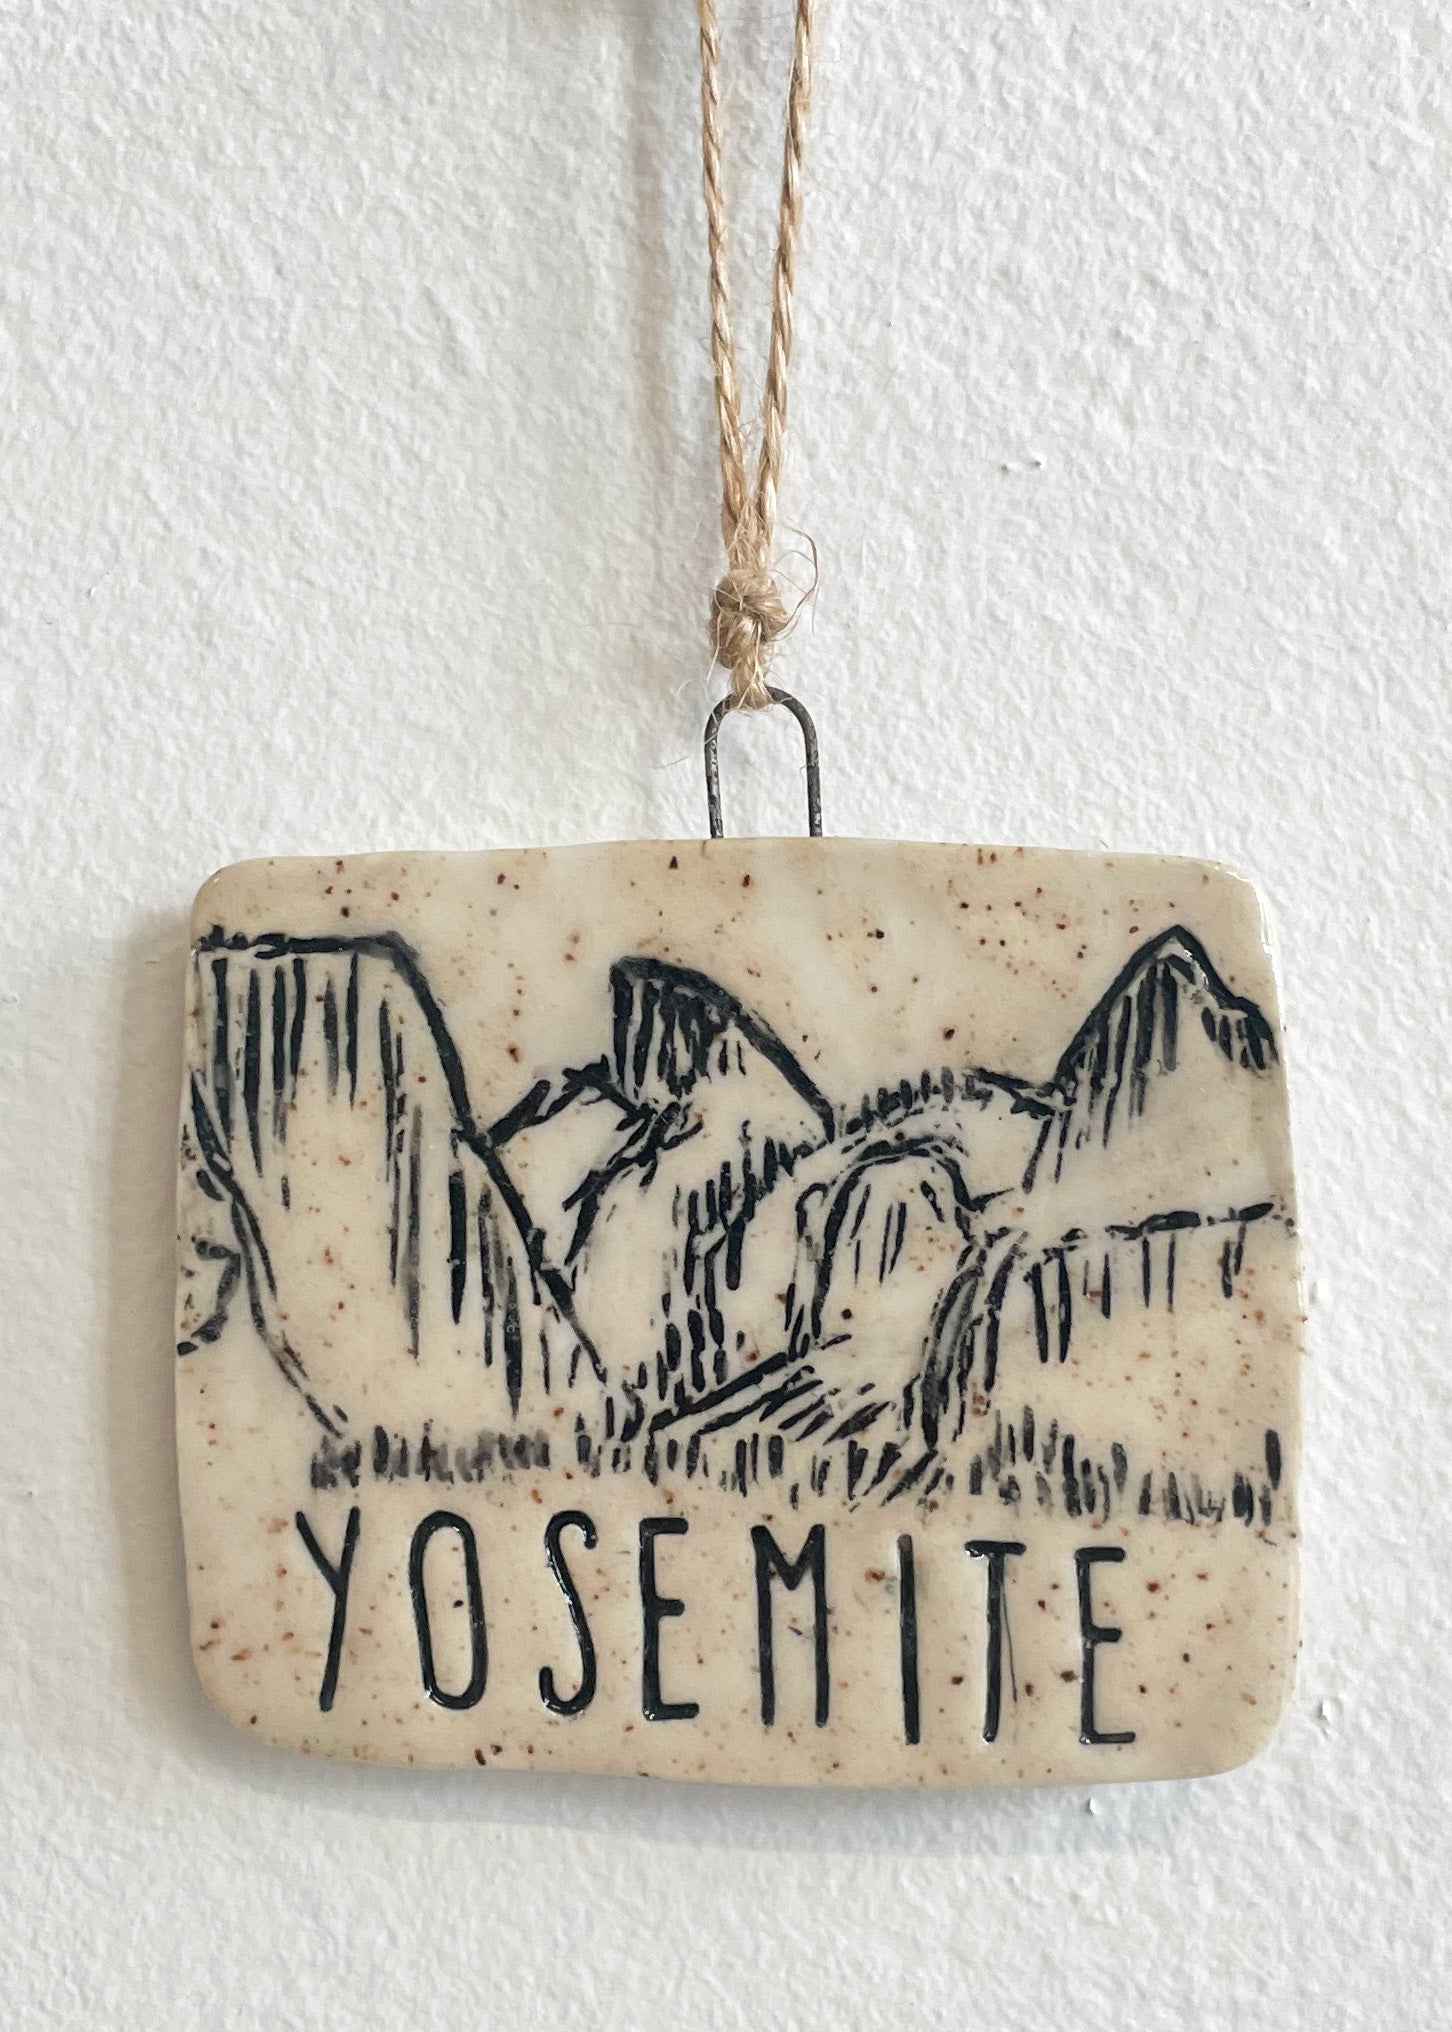 Yosemite Tunnel View Ornament, No 2